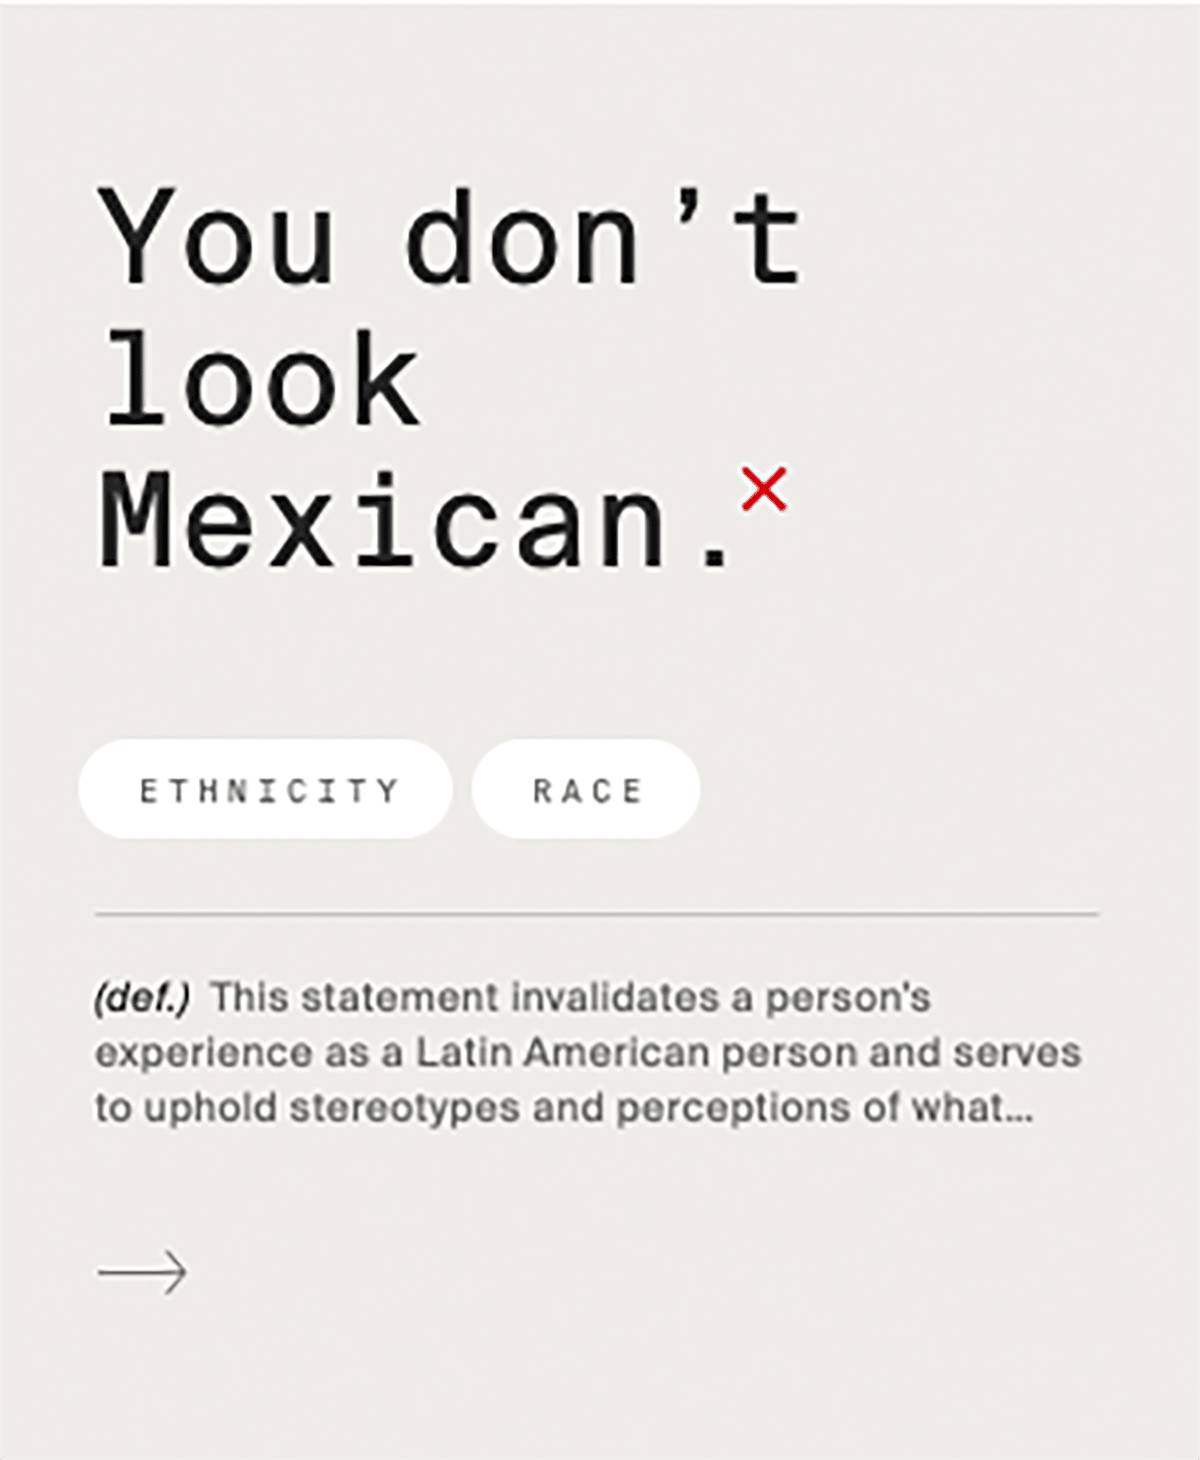 Eine Flashcard auf der »You don´t look Mexican« steht. Dahinter ist ein rotes x